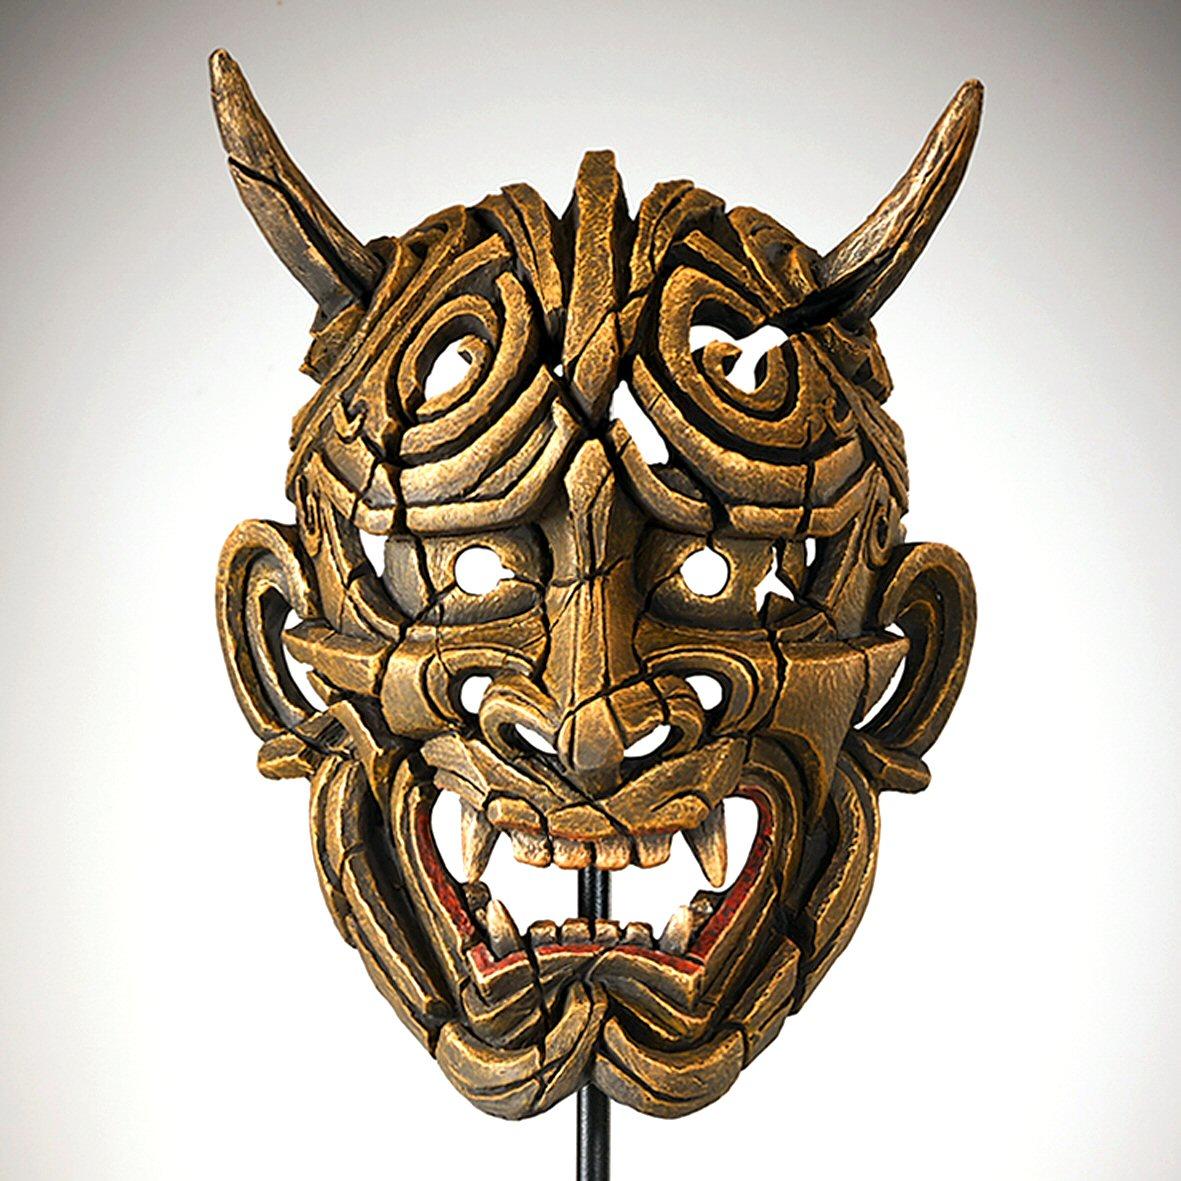 Japanese Hannya Mask - Netsuke Gold EDM01G EDGE by Matt Buckley